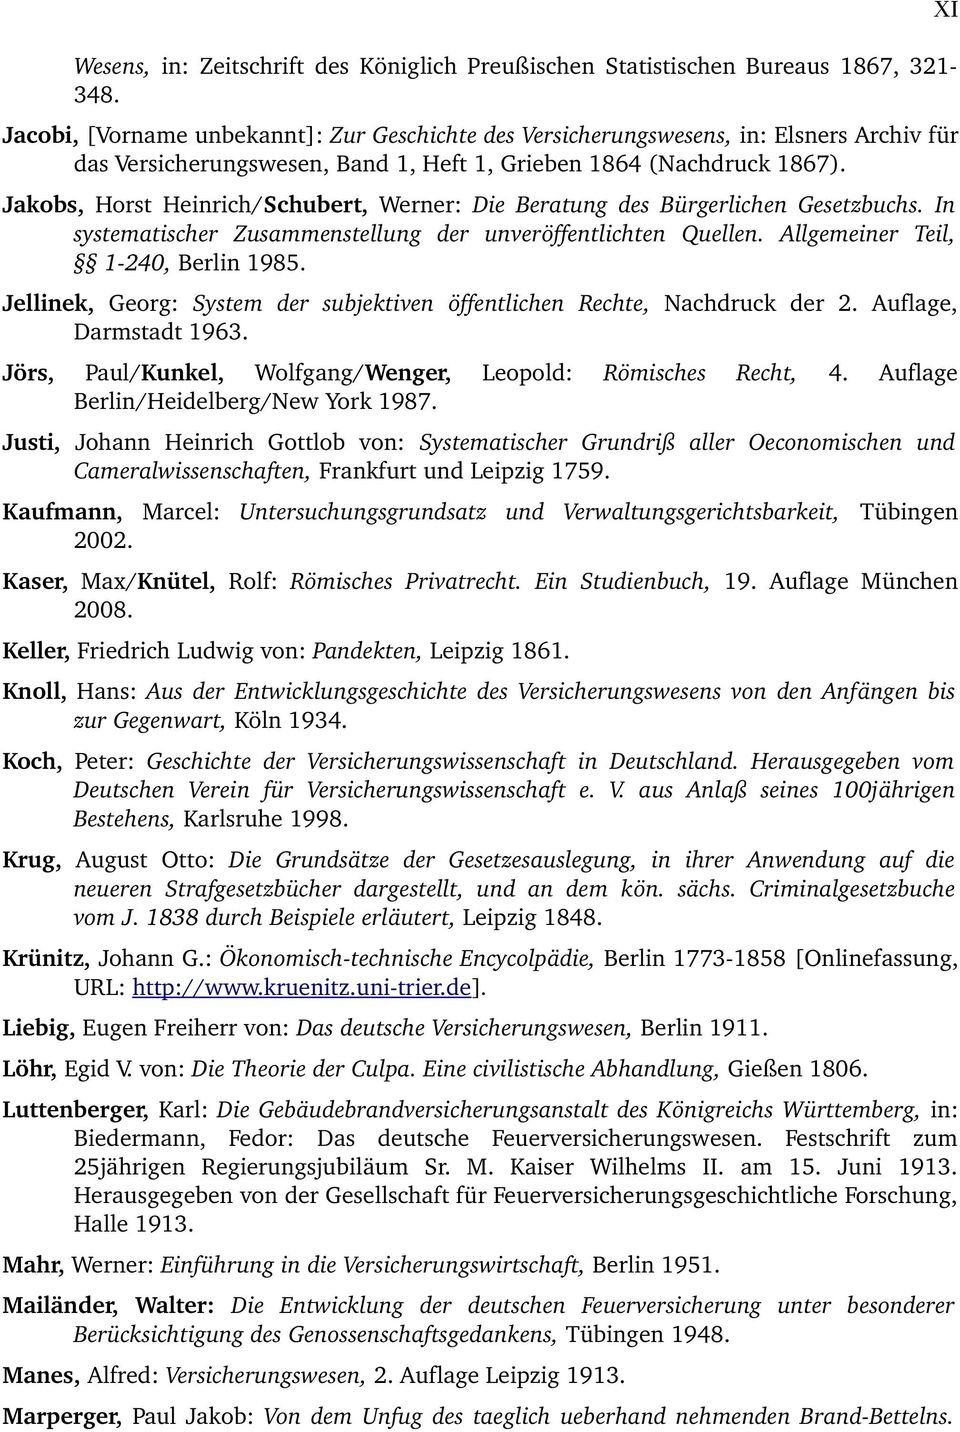 Jakobs, Horst Heinrich/Schubert, Werner: Die Beratung des Bürgerlichen Gesetzbuchs. In systematischer Zusammenstellung der unveröffentlichten Quellen. Allgemeiner Teil, 1 240, Berlin 1985.